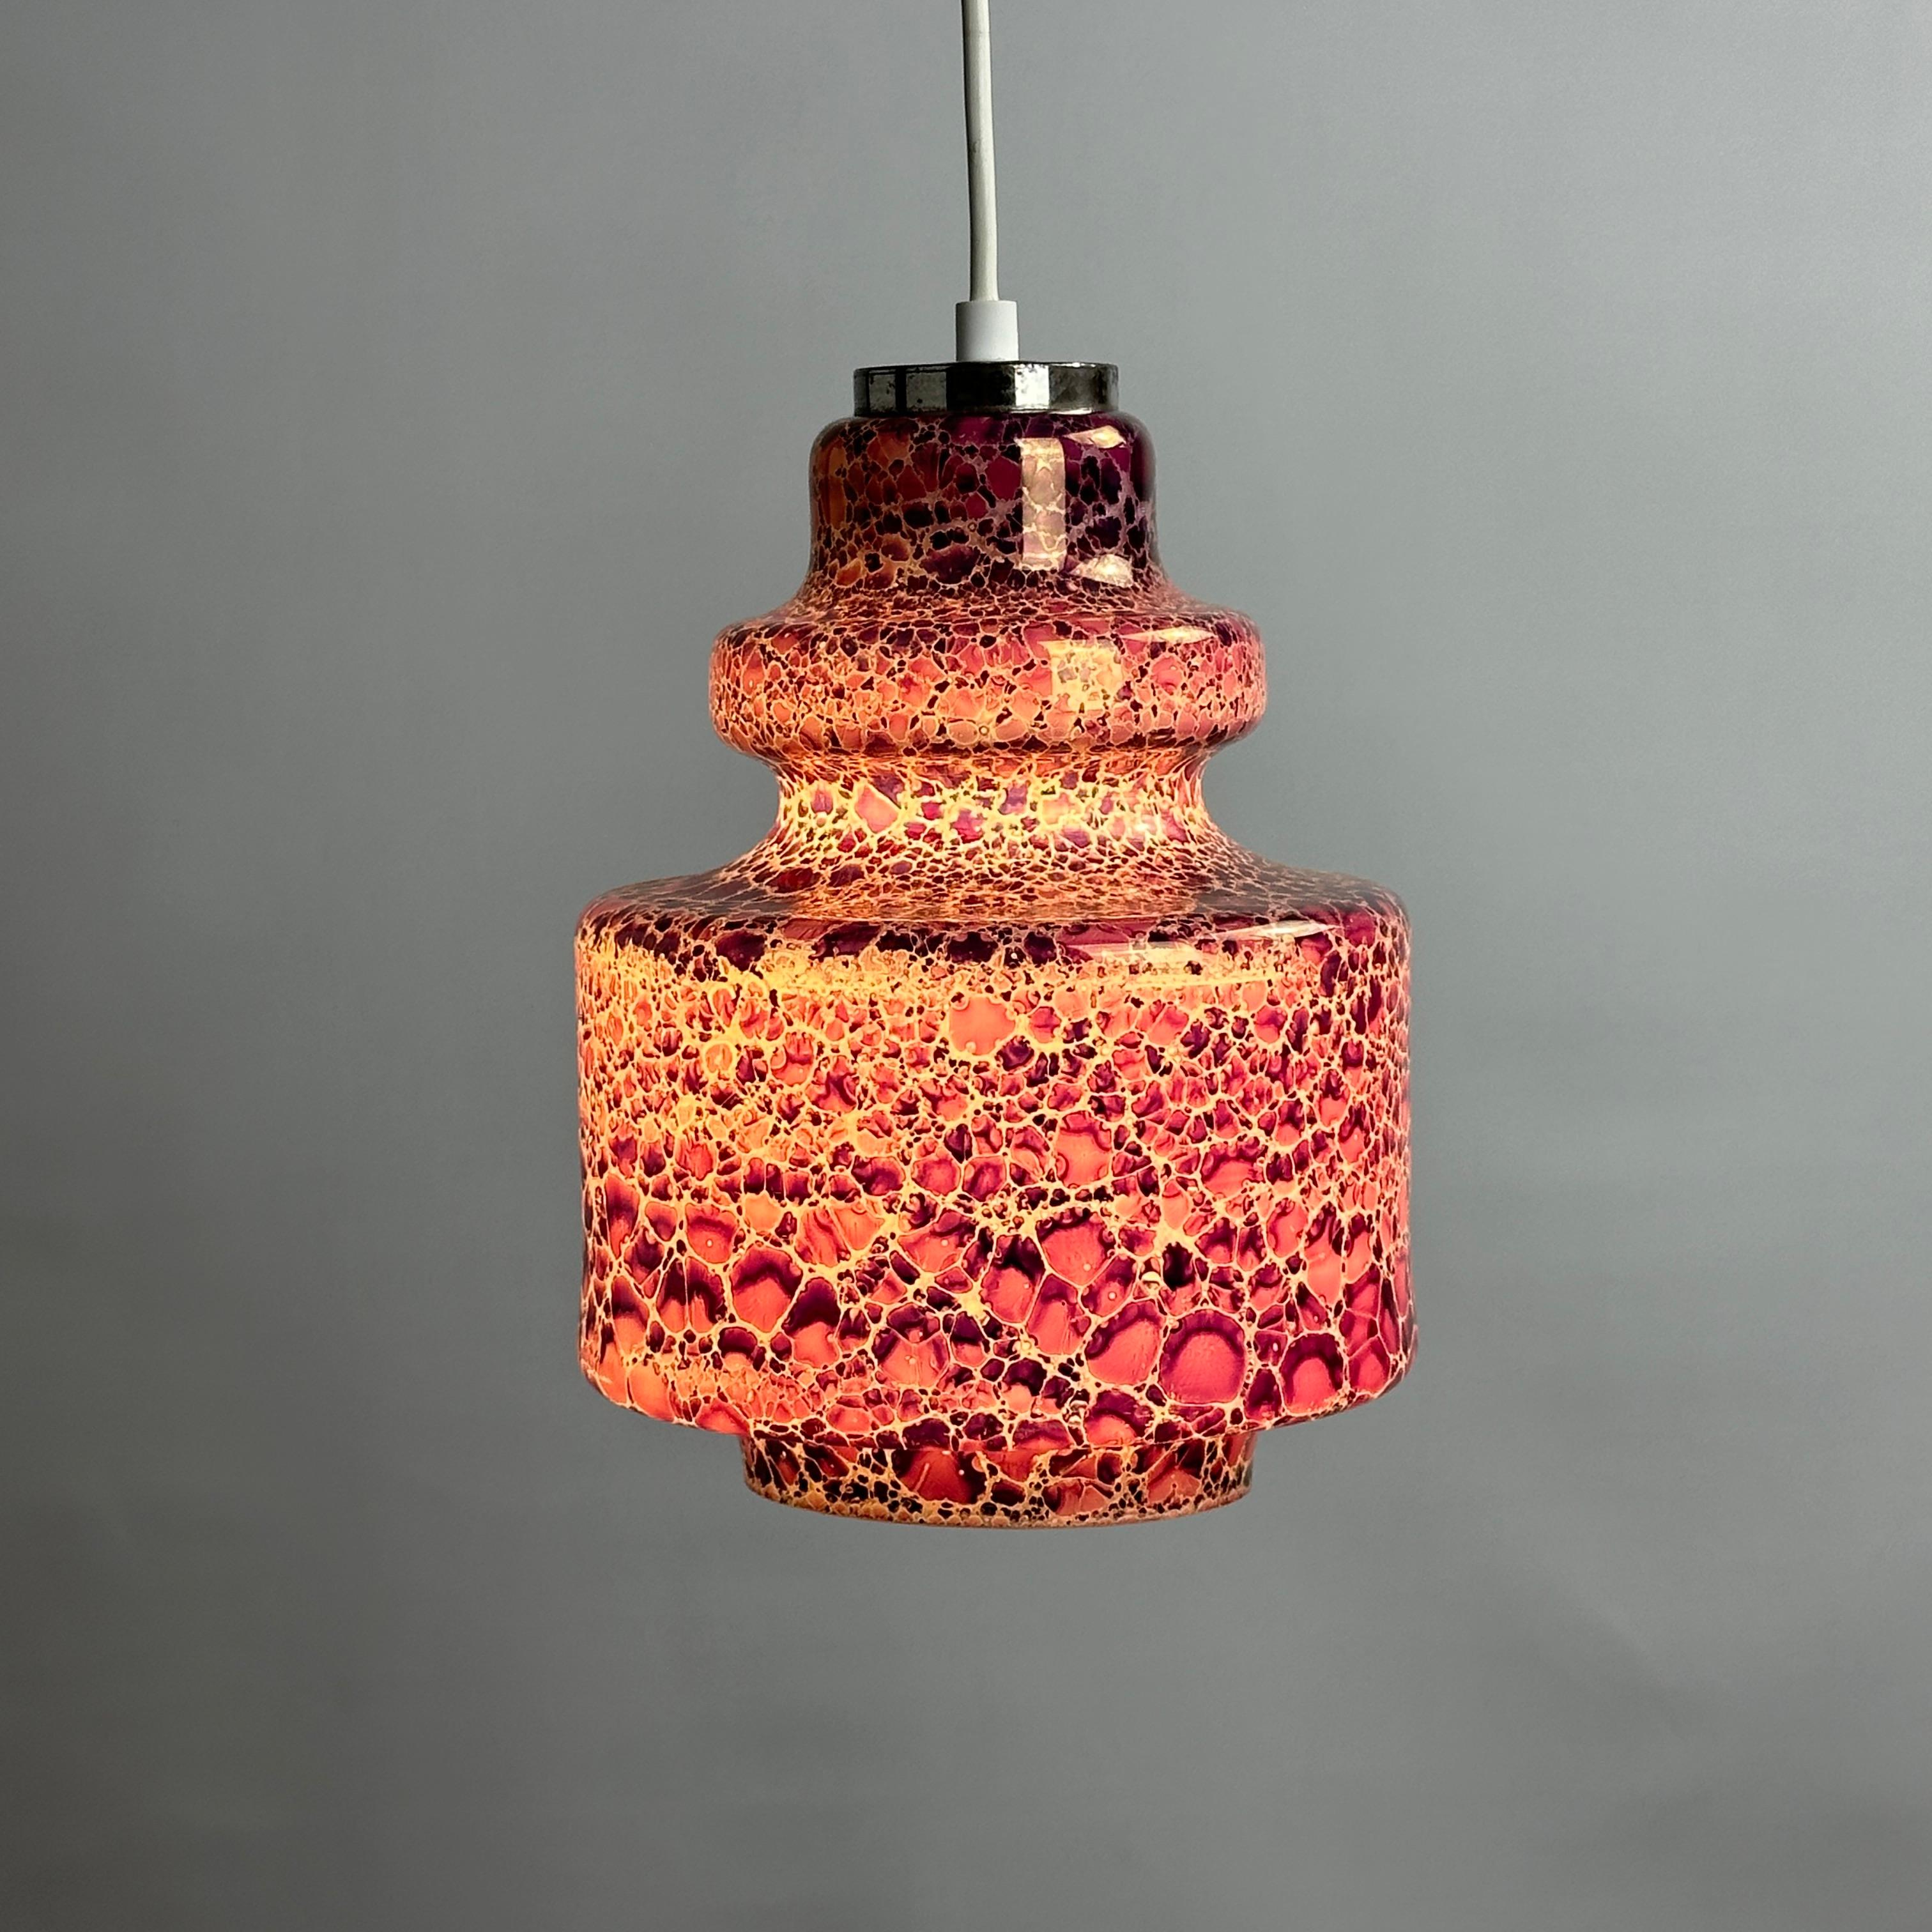 Dieses wunderbare Stück niederländischer Handwerkskunst der Firma Herda wurde um 1970 hergestellt. Die Lampe besteht aus Opalglas und hat ein Schlangenhautmuster. Wenn sie eingeschaltet ist, leuchtet die violette Farbe